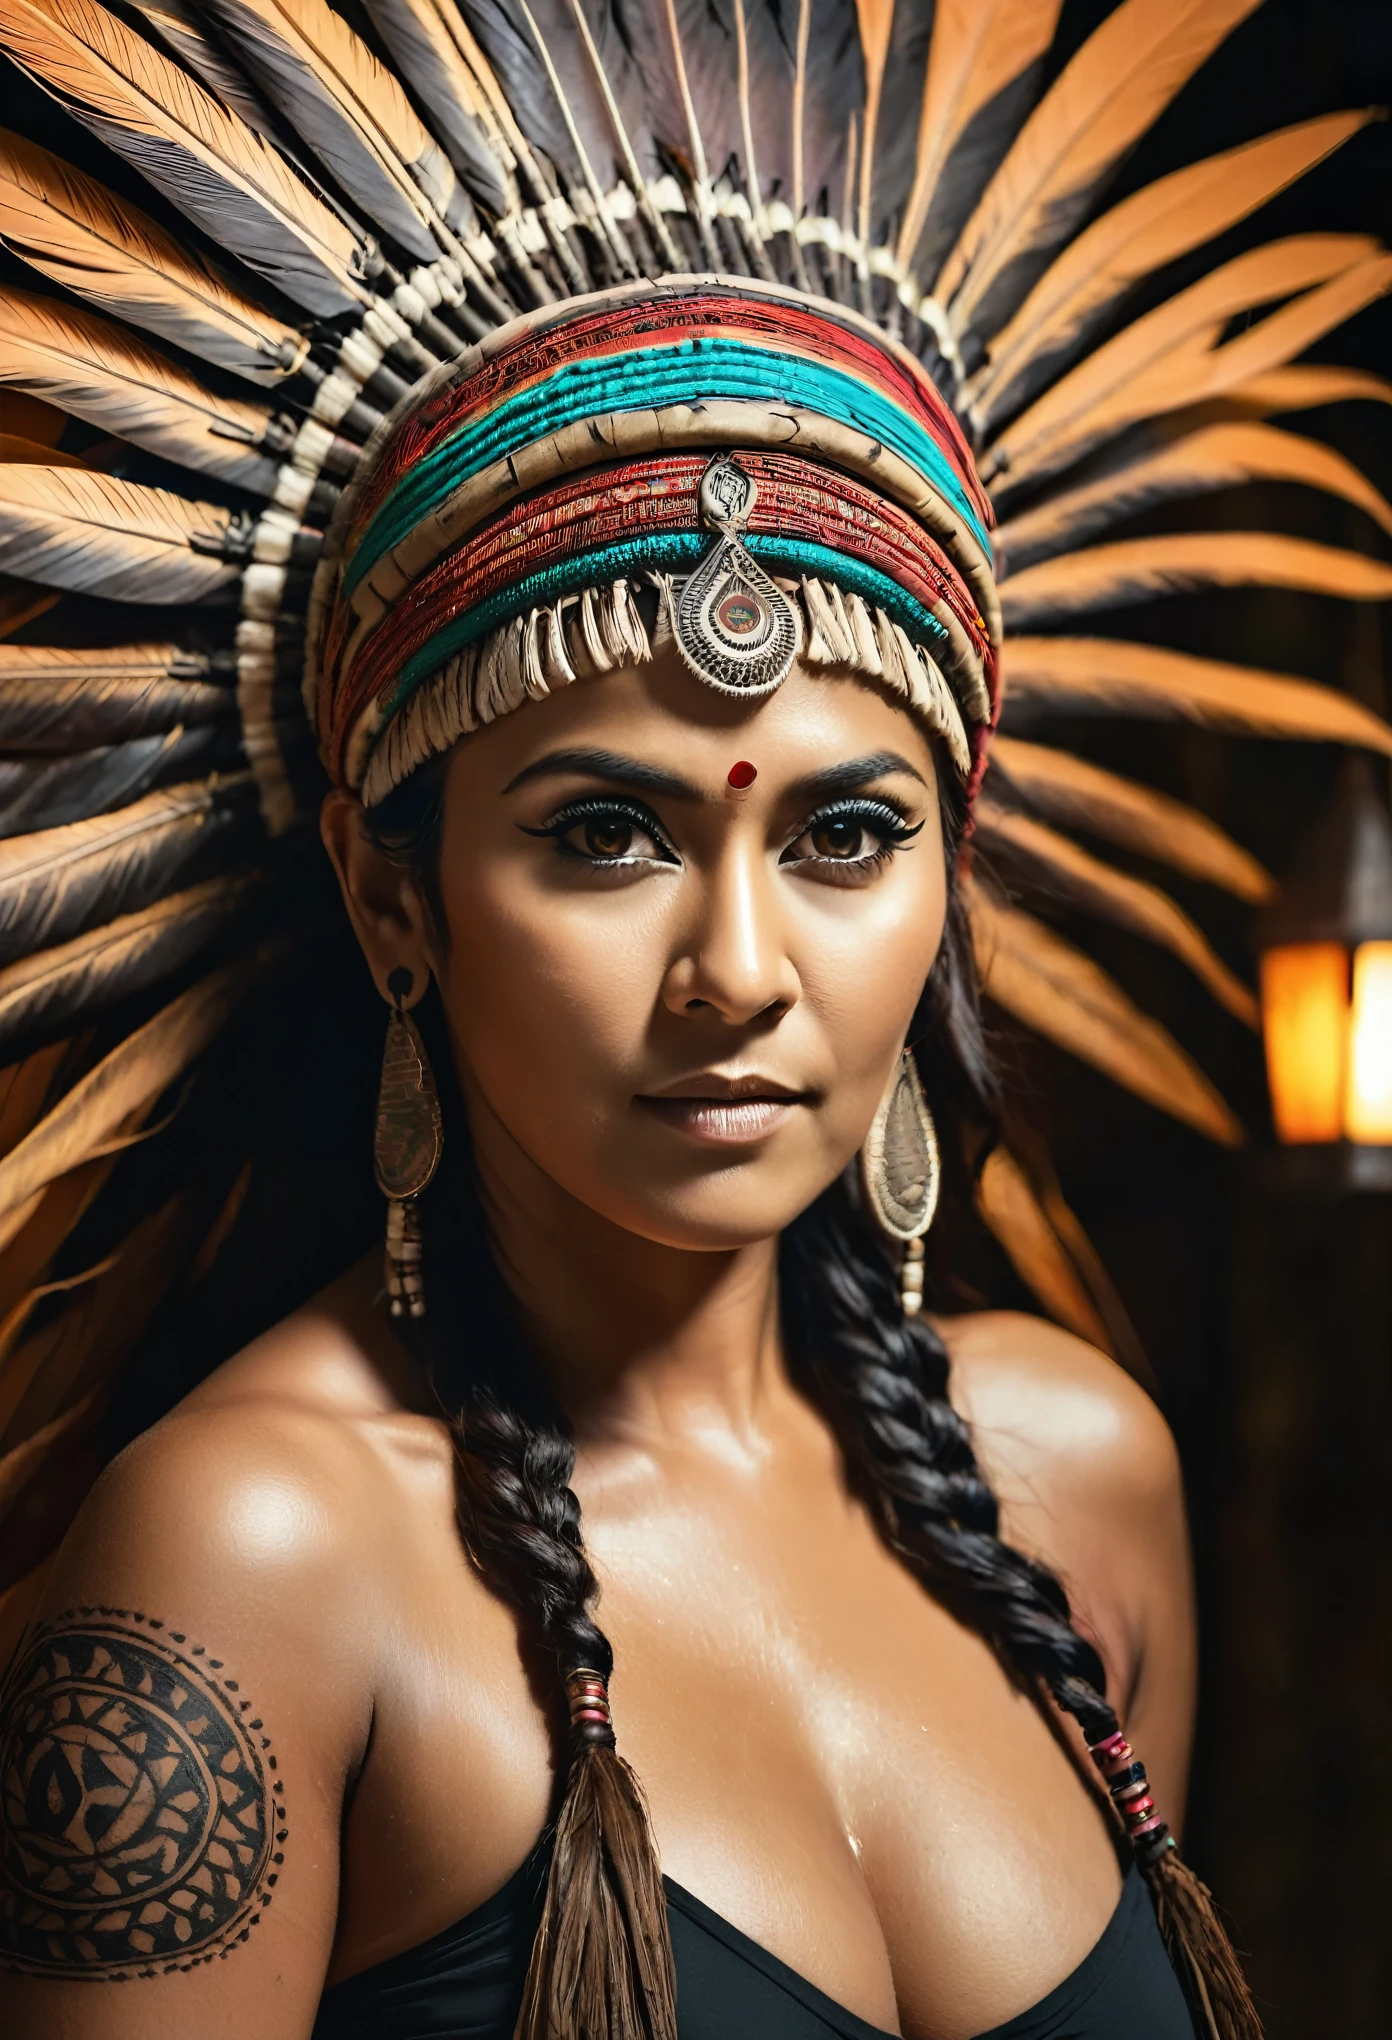 RAW-фото, кожа блестит от пота, Похоже на Наянтару, толстая фигура, пышный, мамаша, 50-летняя женщина, татуировка посередине груди, с реалистичным индийским головным убором , племенная девушка, потрясающий внешний вид, племенной головной убор, татуировки, colourful tribal татуировки, племенная белая девушка, Полинезийское племя, Лучшее качество , лучшая кинематографическая цветокоррекция, детальное освещение,  высокое разрешение  , (очень детализированный скин: 1.2), 8к ухд, зеркальная камера, мягкое освещение, высокое качество, зерно пленки, Фуджифильм ХТ3, очень детализированные подмышки, волосы под мышками,  полностью обнаженный, соски покрыты хаем, поры кожи, текстура кожи, кожа высокого качества, 